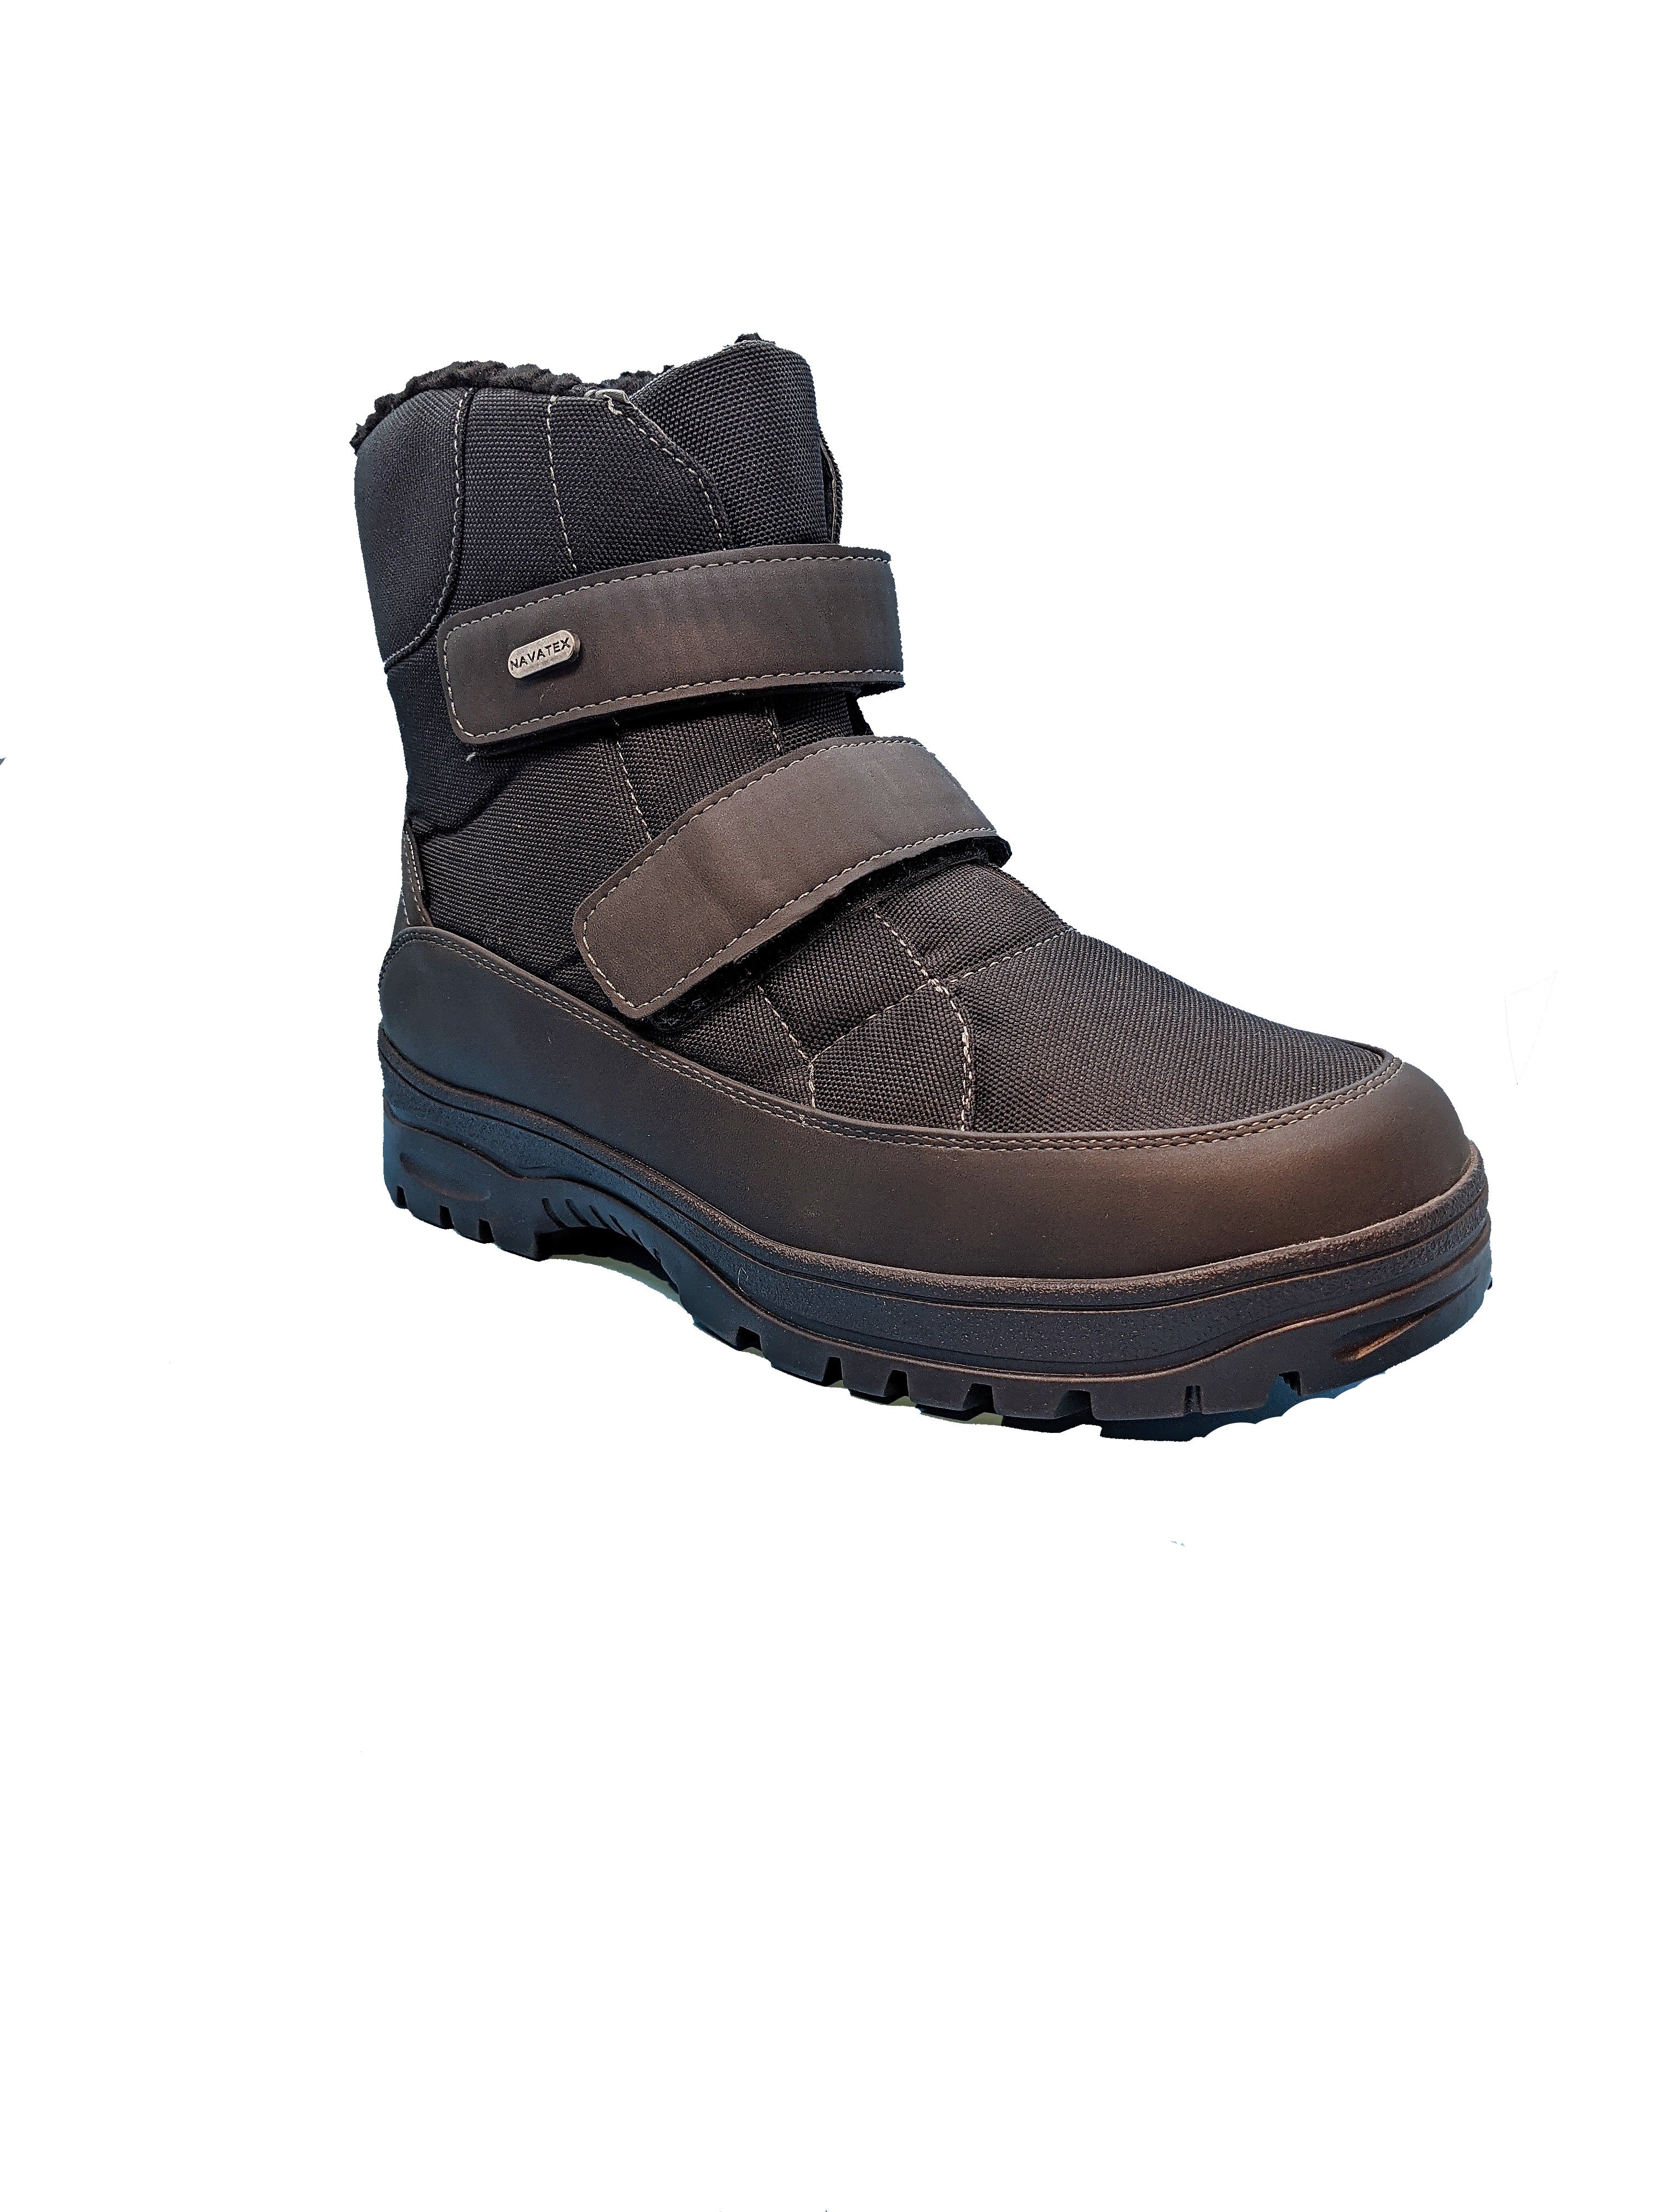 Navatex Men's Winter Boots